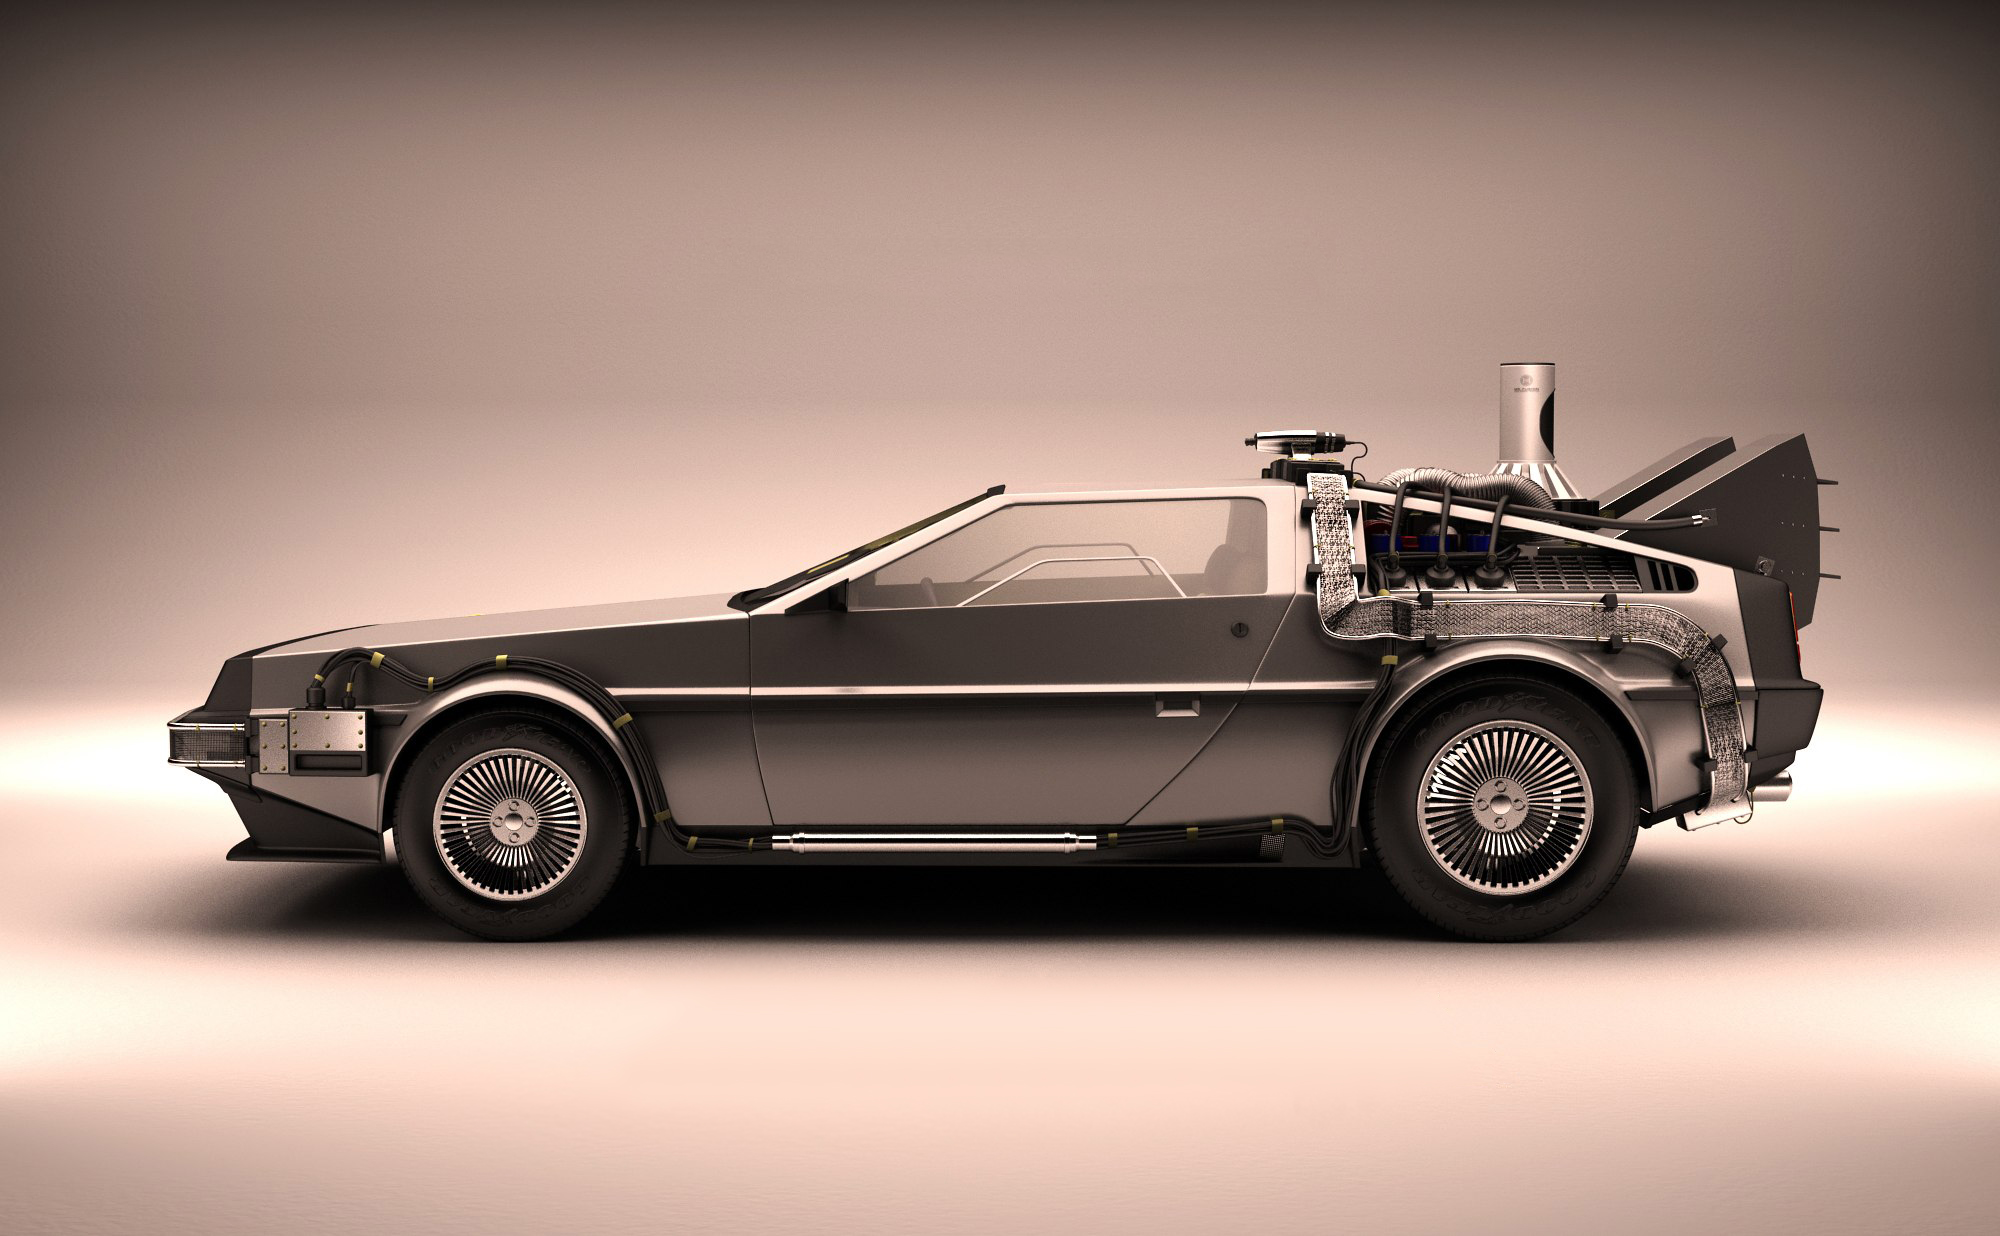 1981 DeLorean DMC 12 Back to the Future